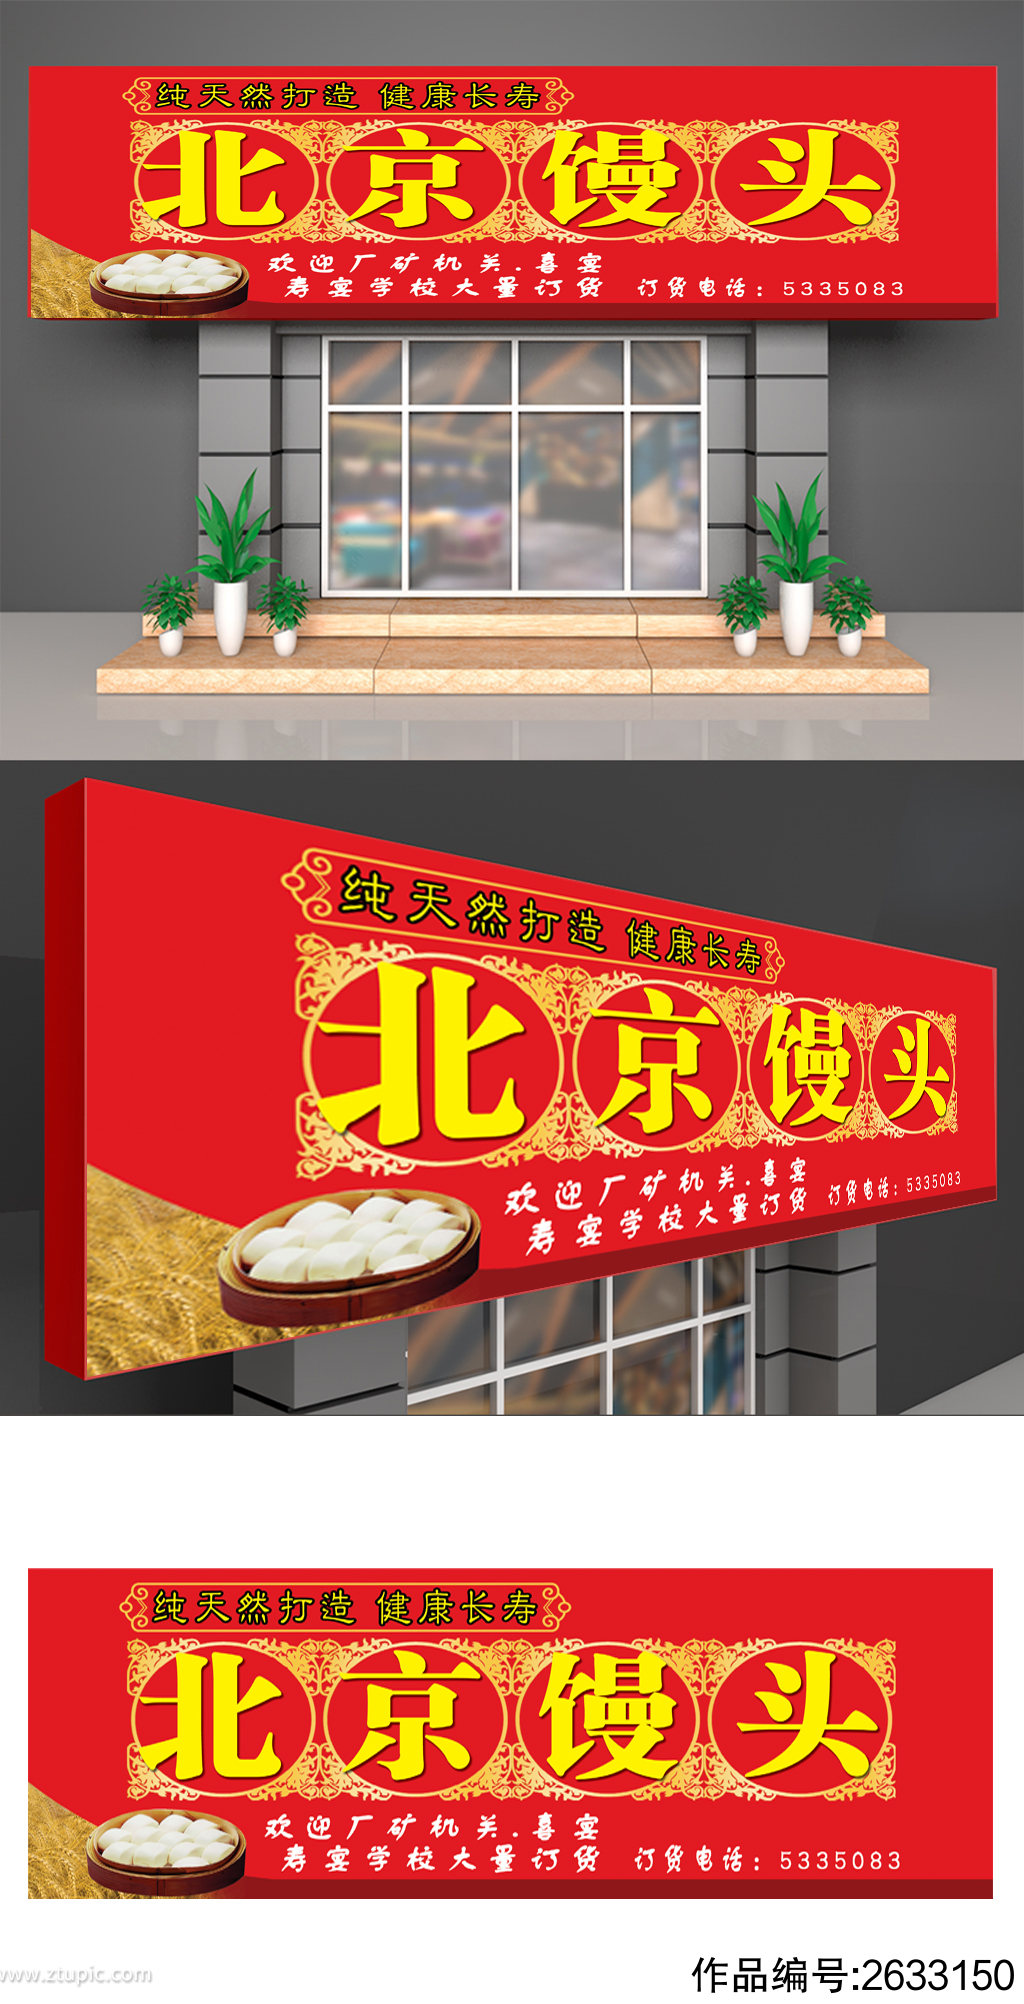 北京馒头早餐店喷绘门头招牌